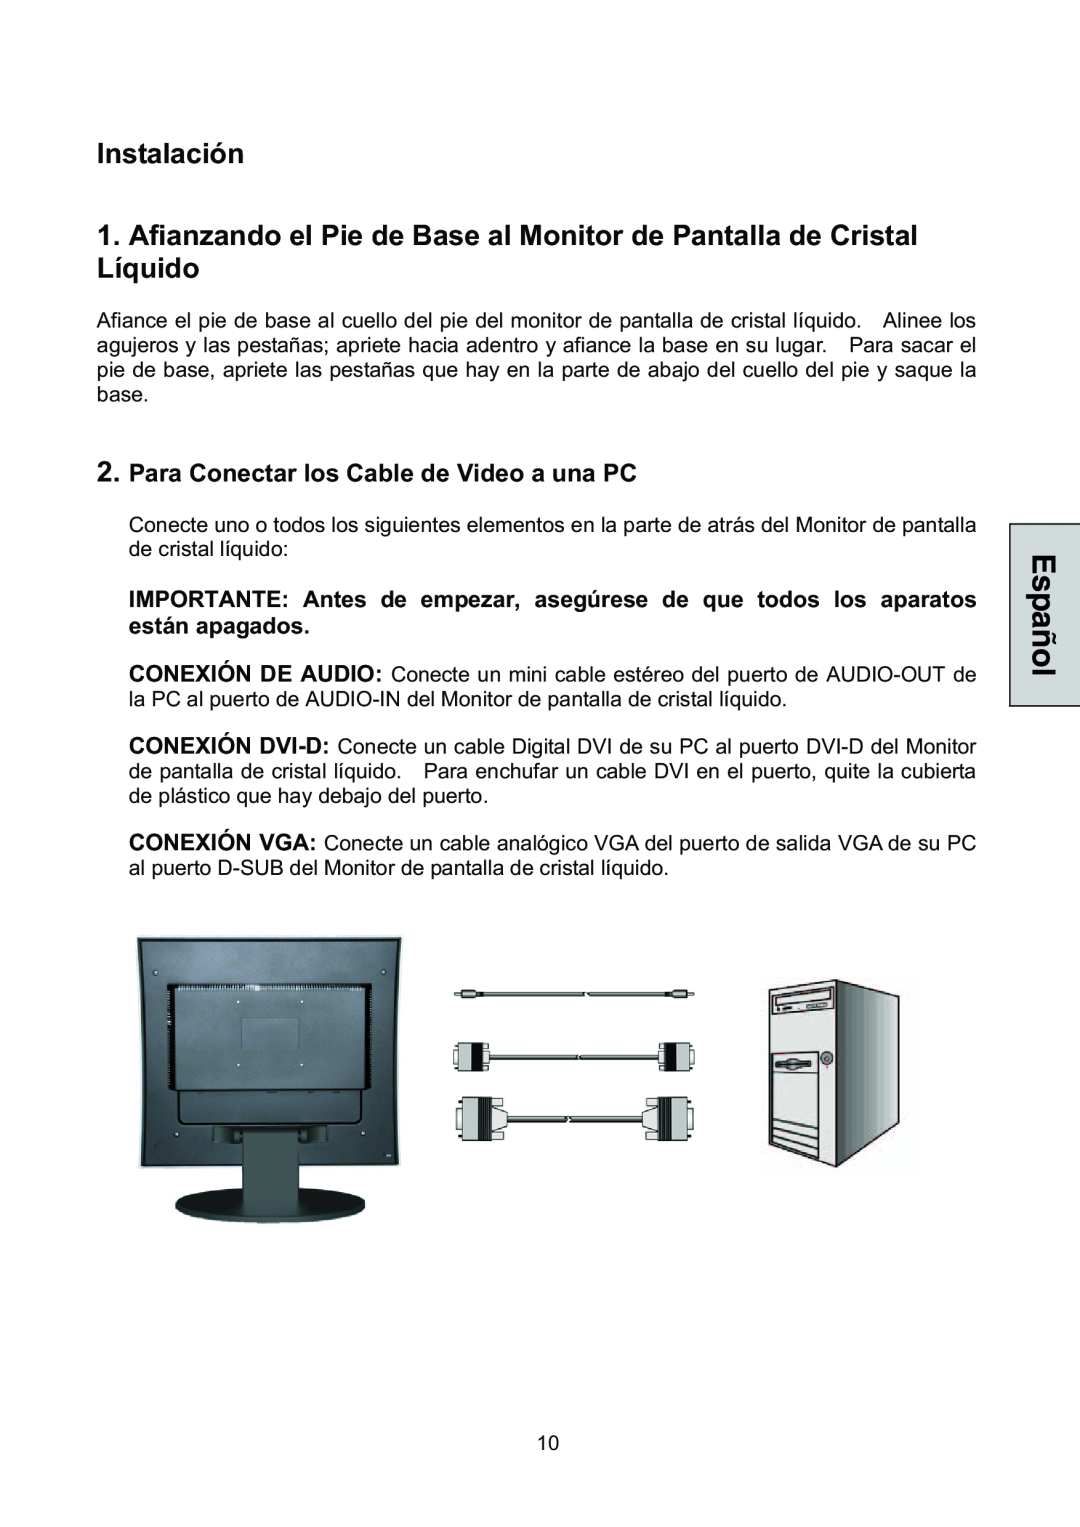 Westinghouse L1928NV manual Instalación, Para Conectar los Cable de Video a una PC 